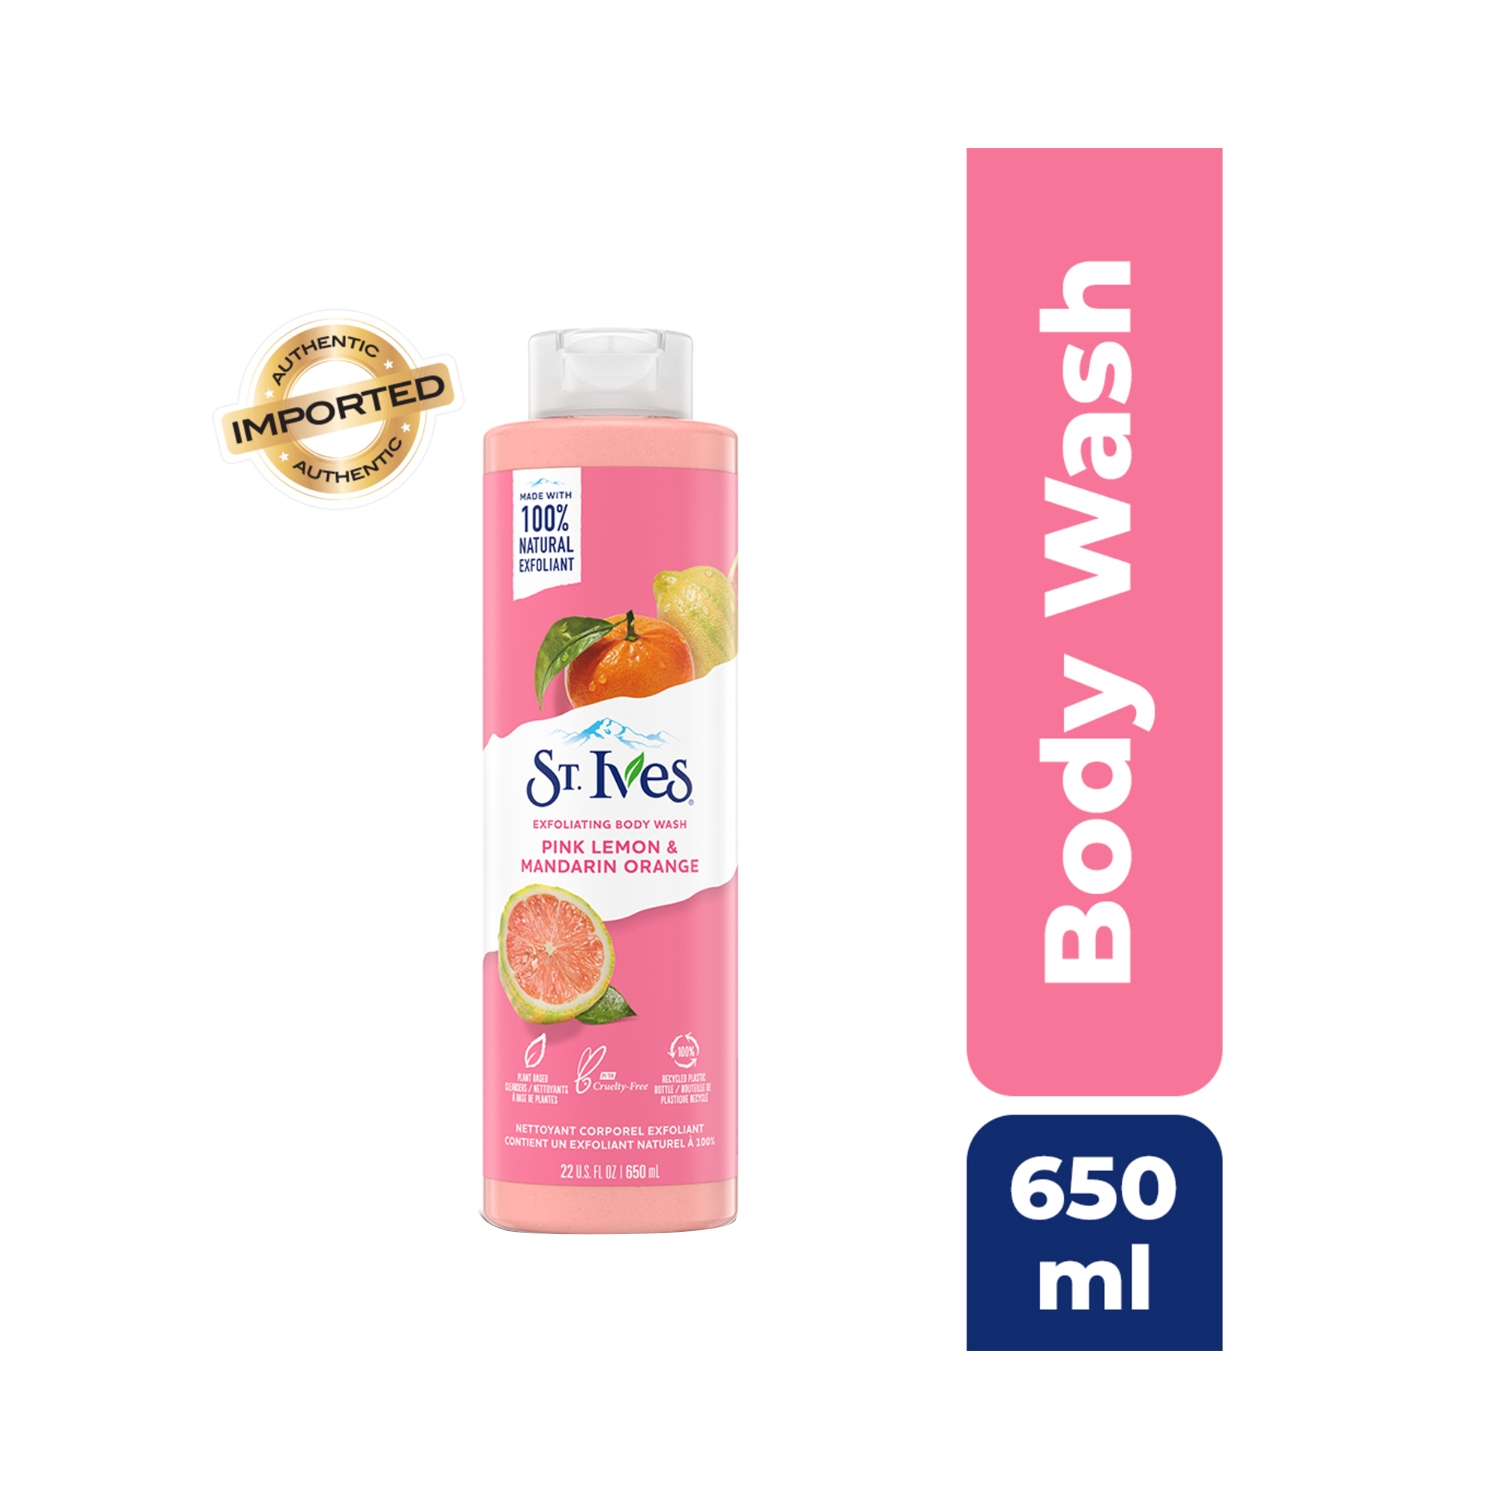 St. Ives | St. Ives Exfoliating Pink Lemon & Mandarin Orange Shower Gel (650ml)